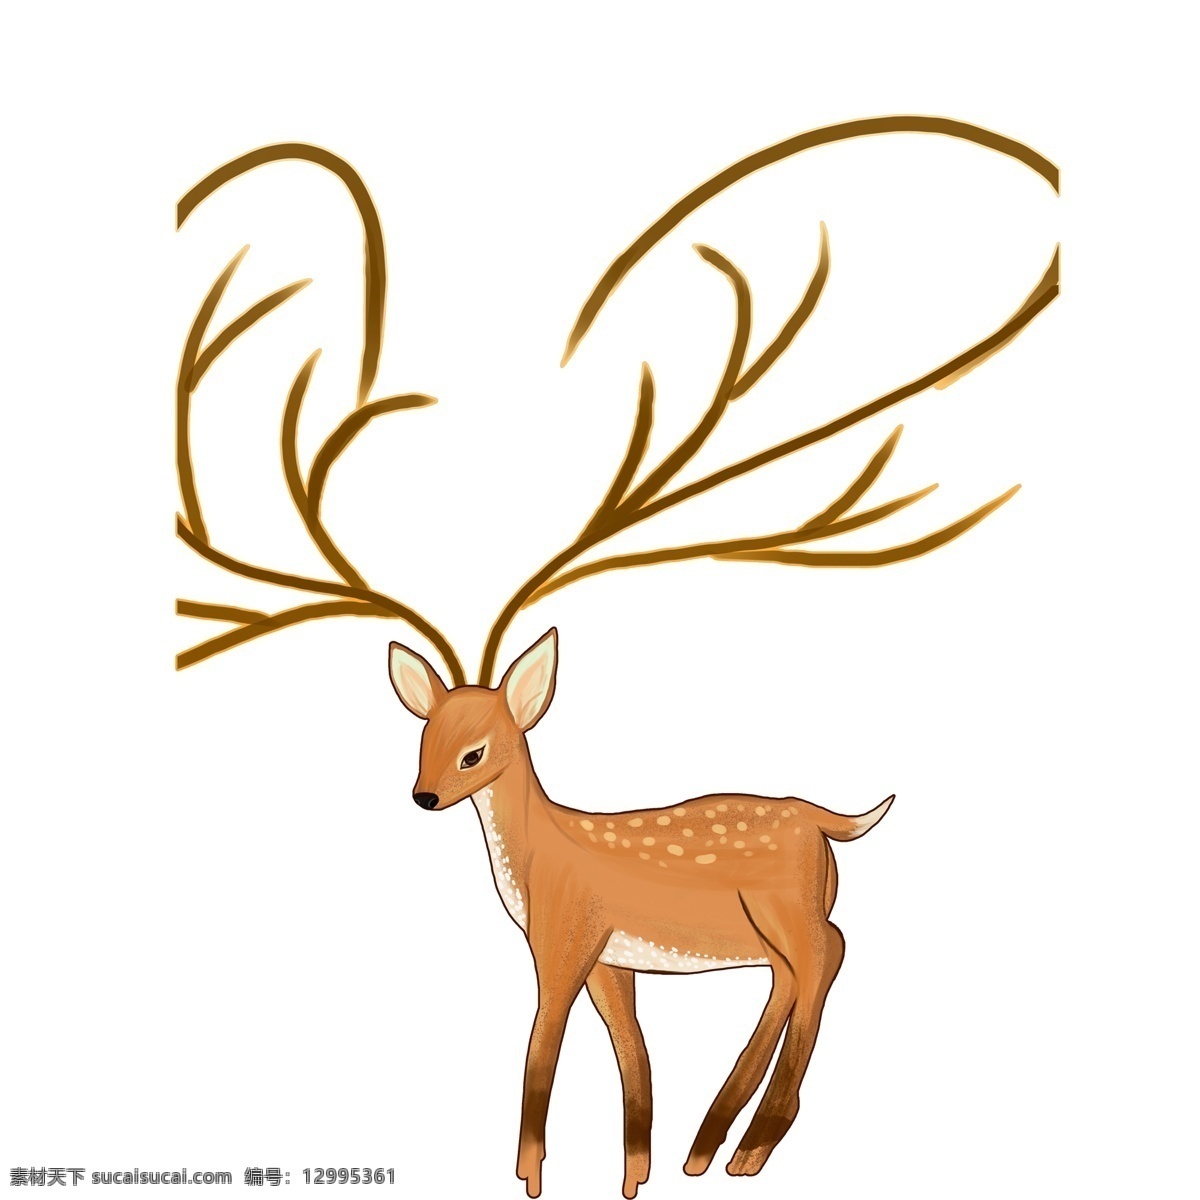 手绘 卡通 梅花鹿 图案 元素 动物 麋鹿 设计元素 简约 长角鹿 装饰图案 元素设计 创意元素